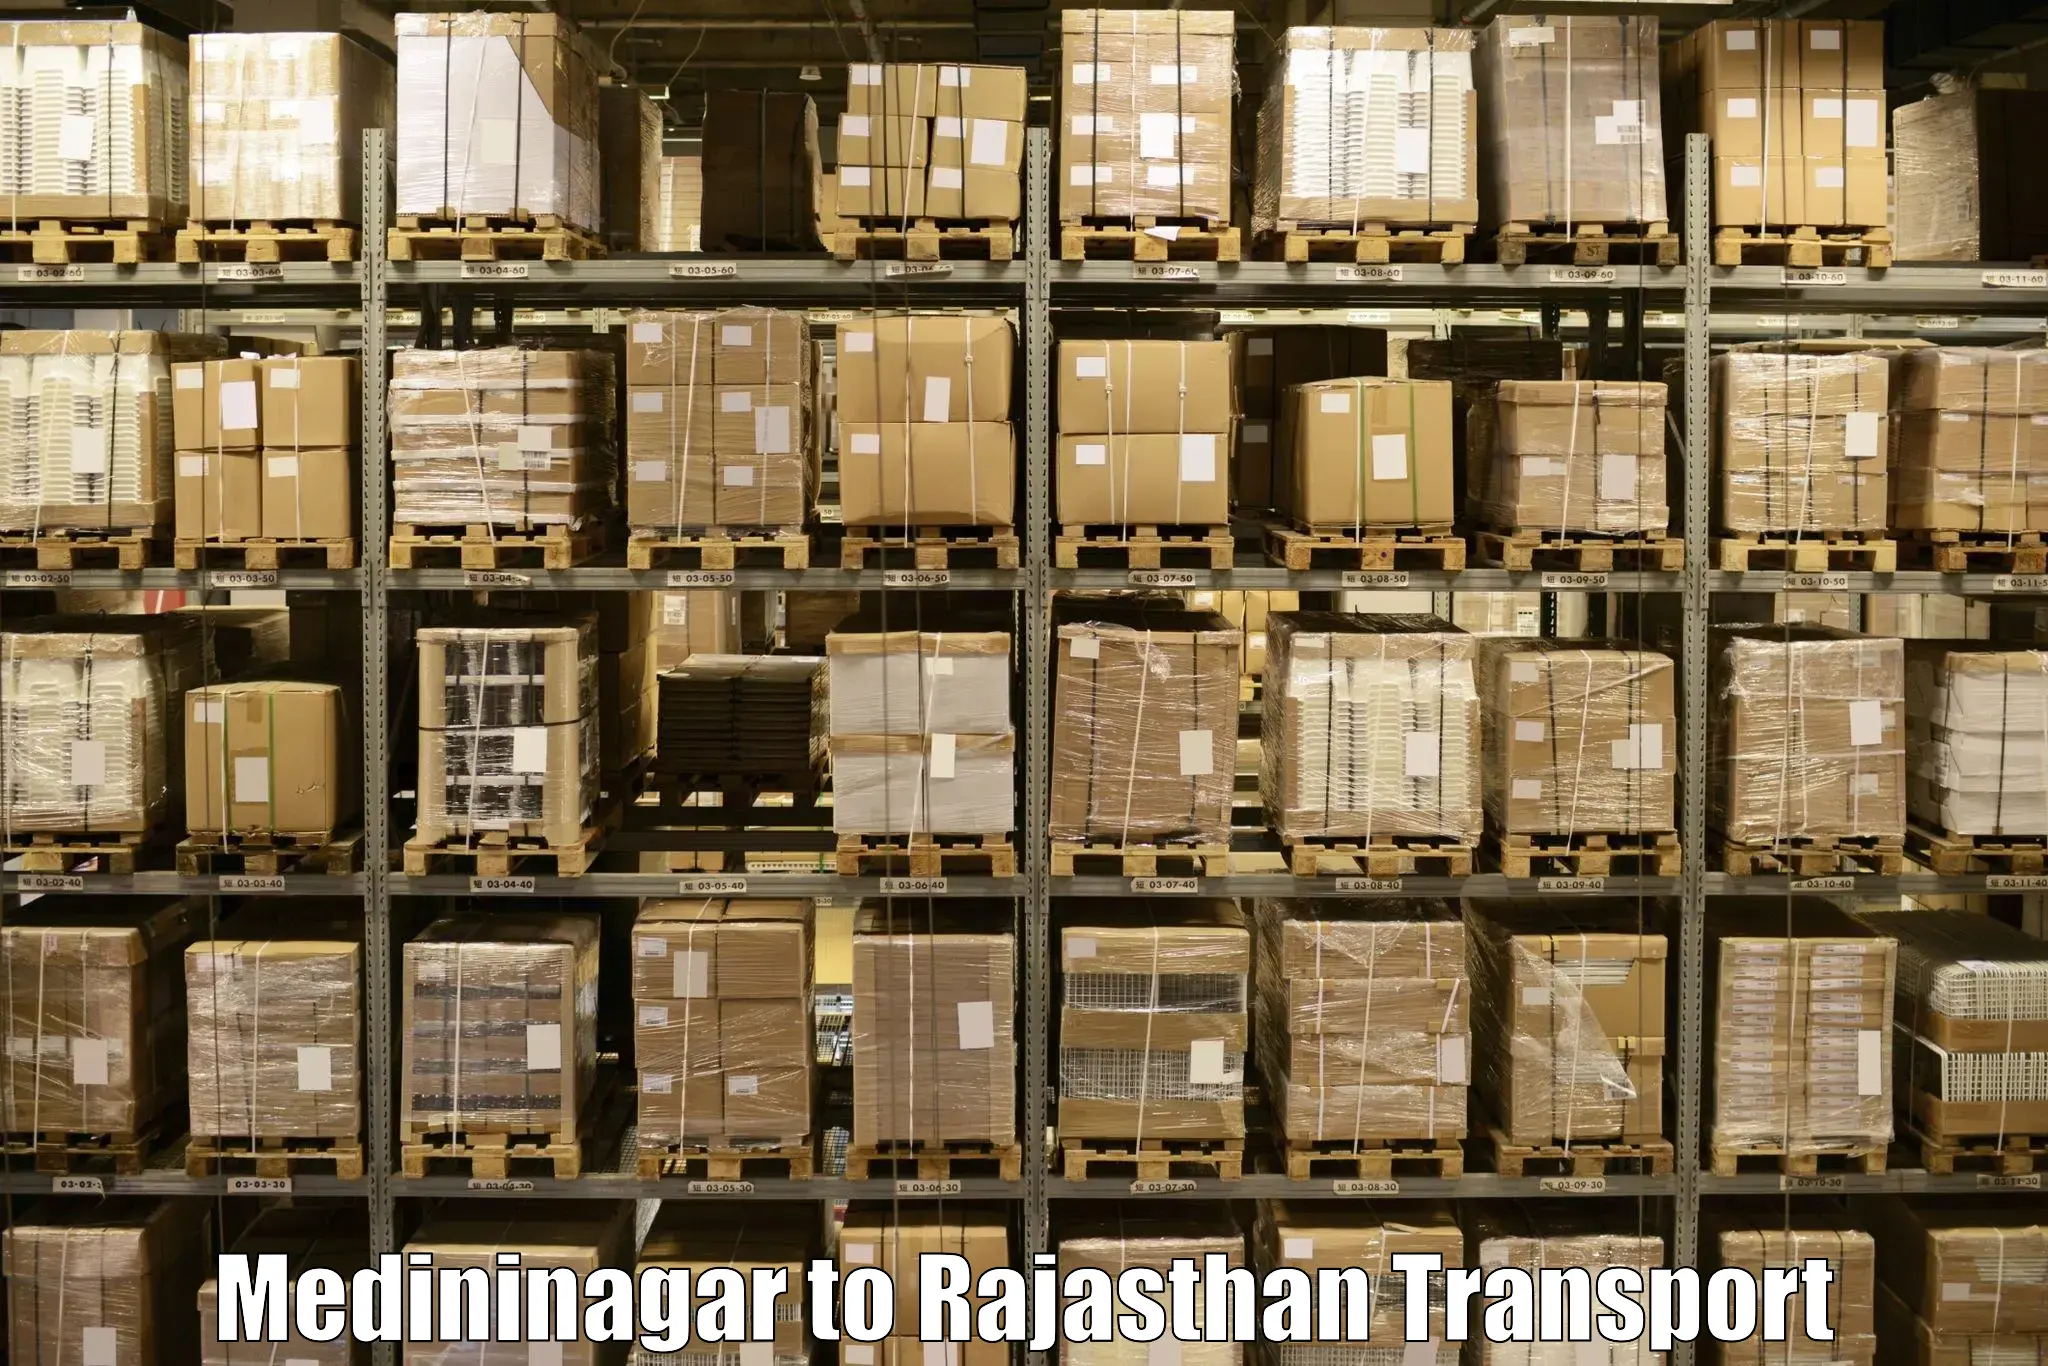 Cargo transport services Medininagar to Malpura